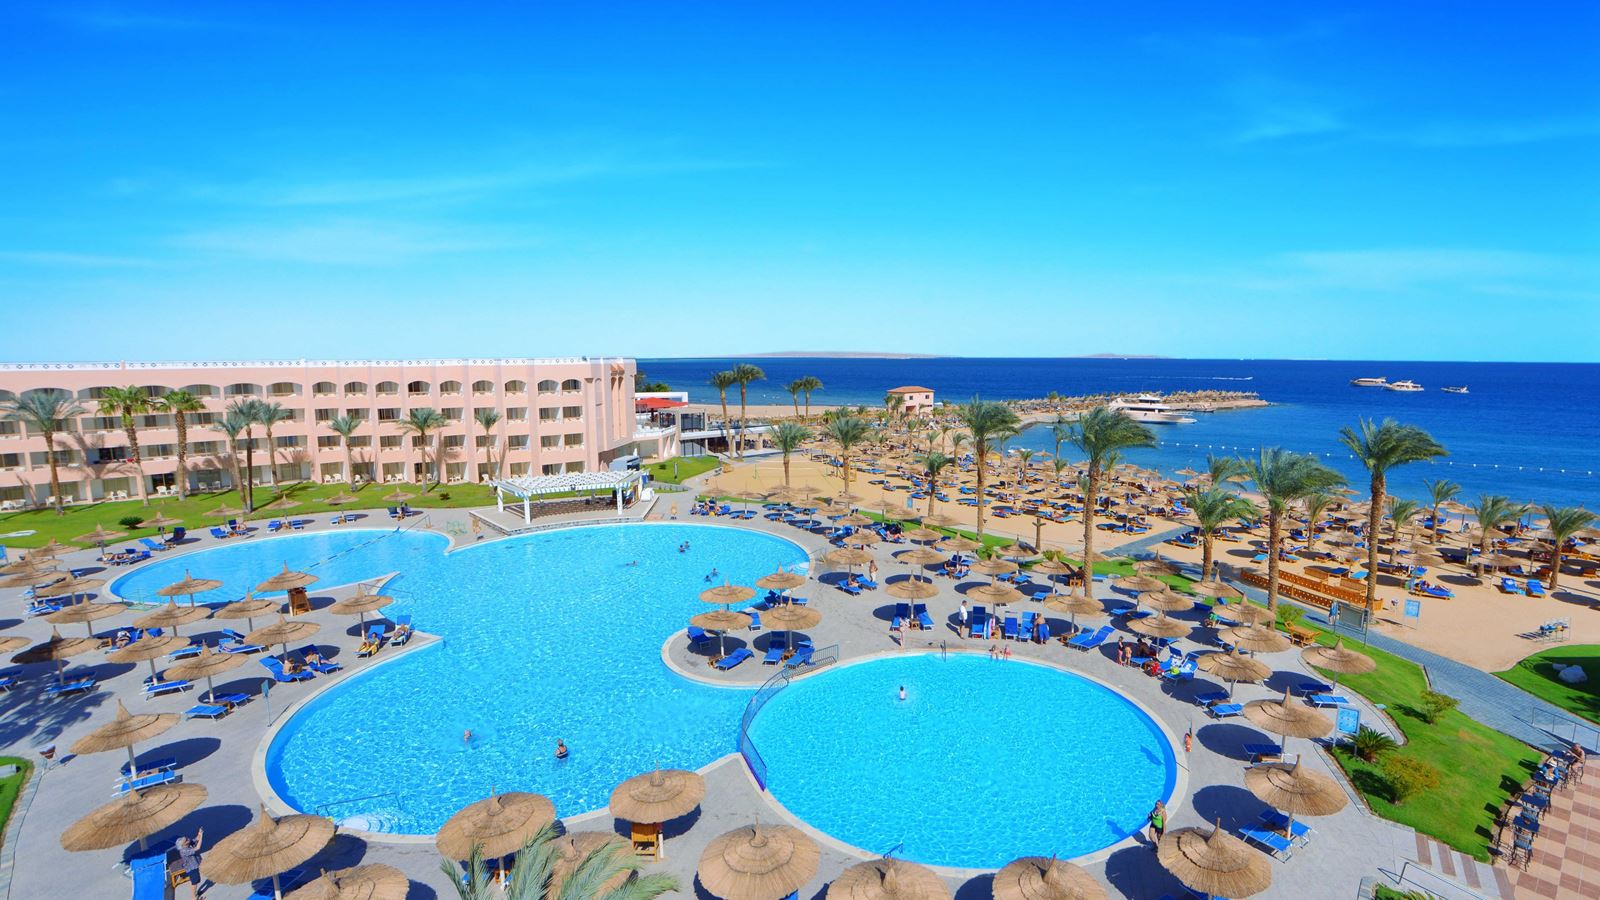 Отель Beach Albatros Resort 4. Бич Альбатрос Резорт Хургада 4. Albatros Beach Египет. Отель Египет Beach Albatros Resort Hurghada 4 *.